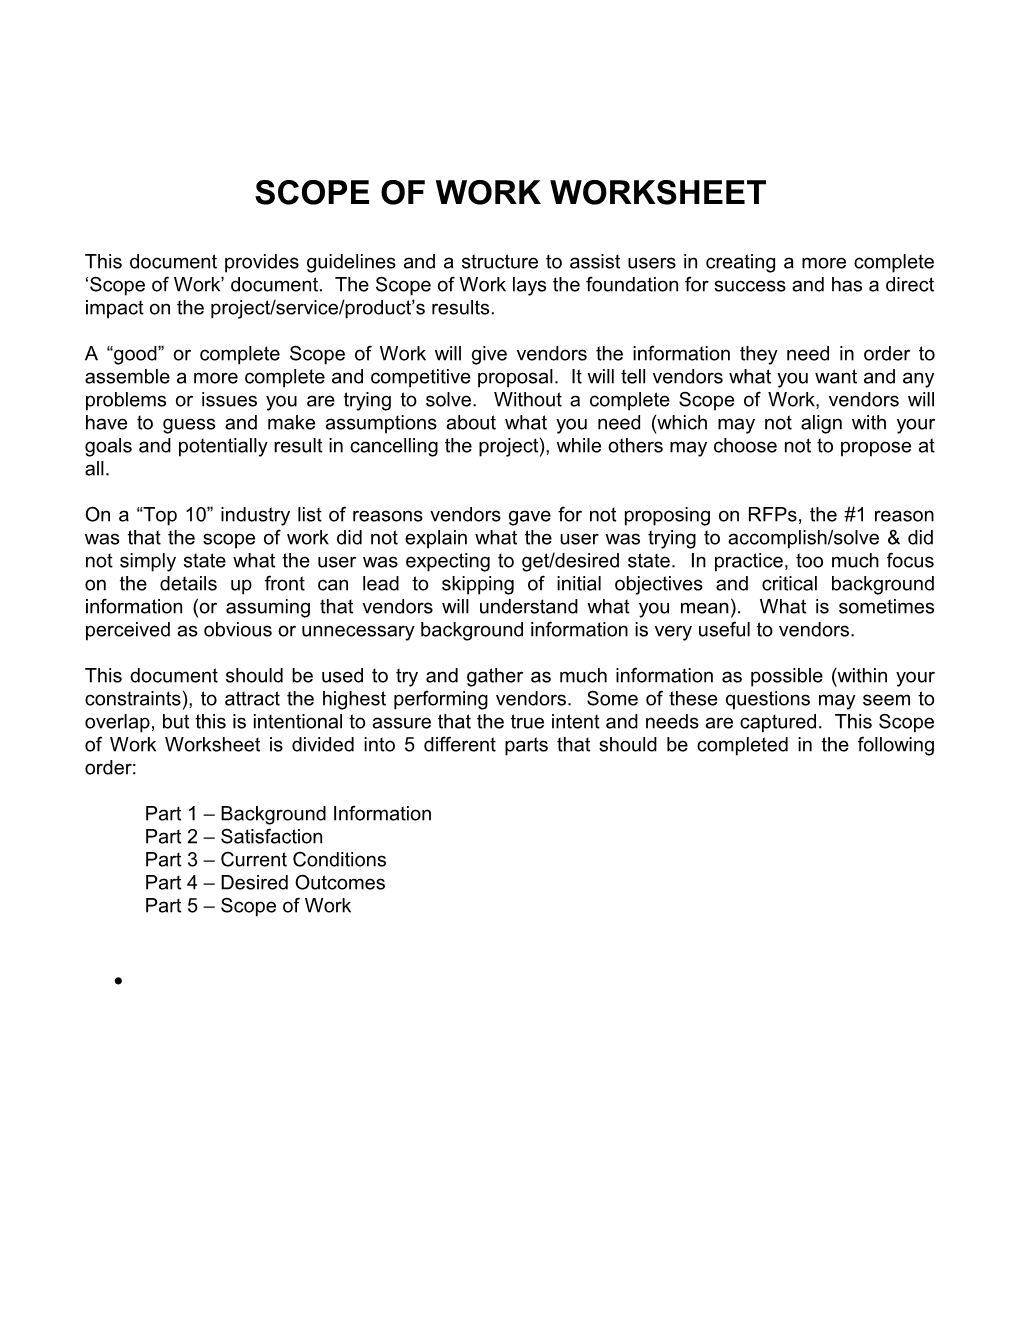 Scope of Work Worksheet